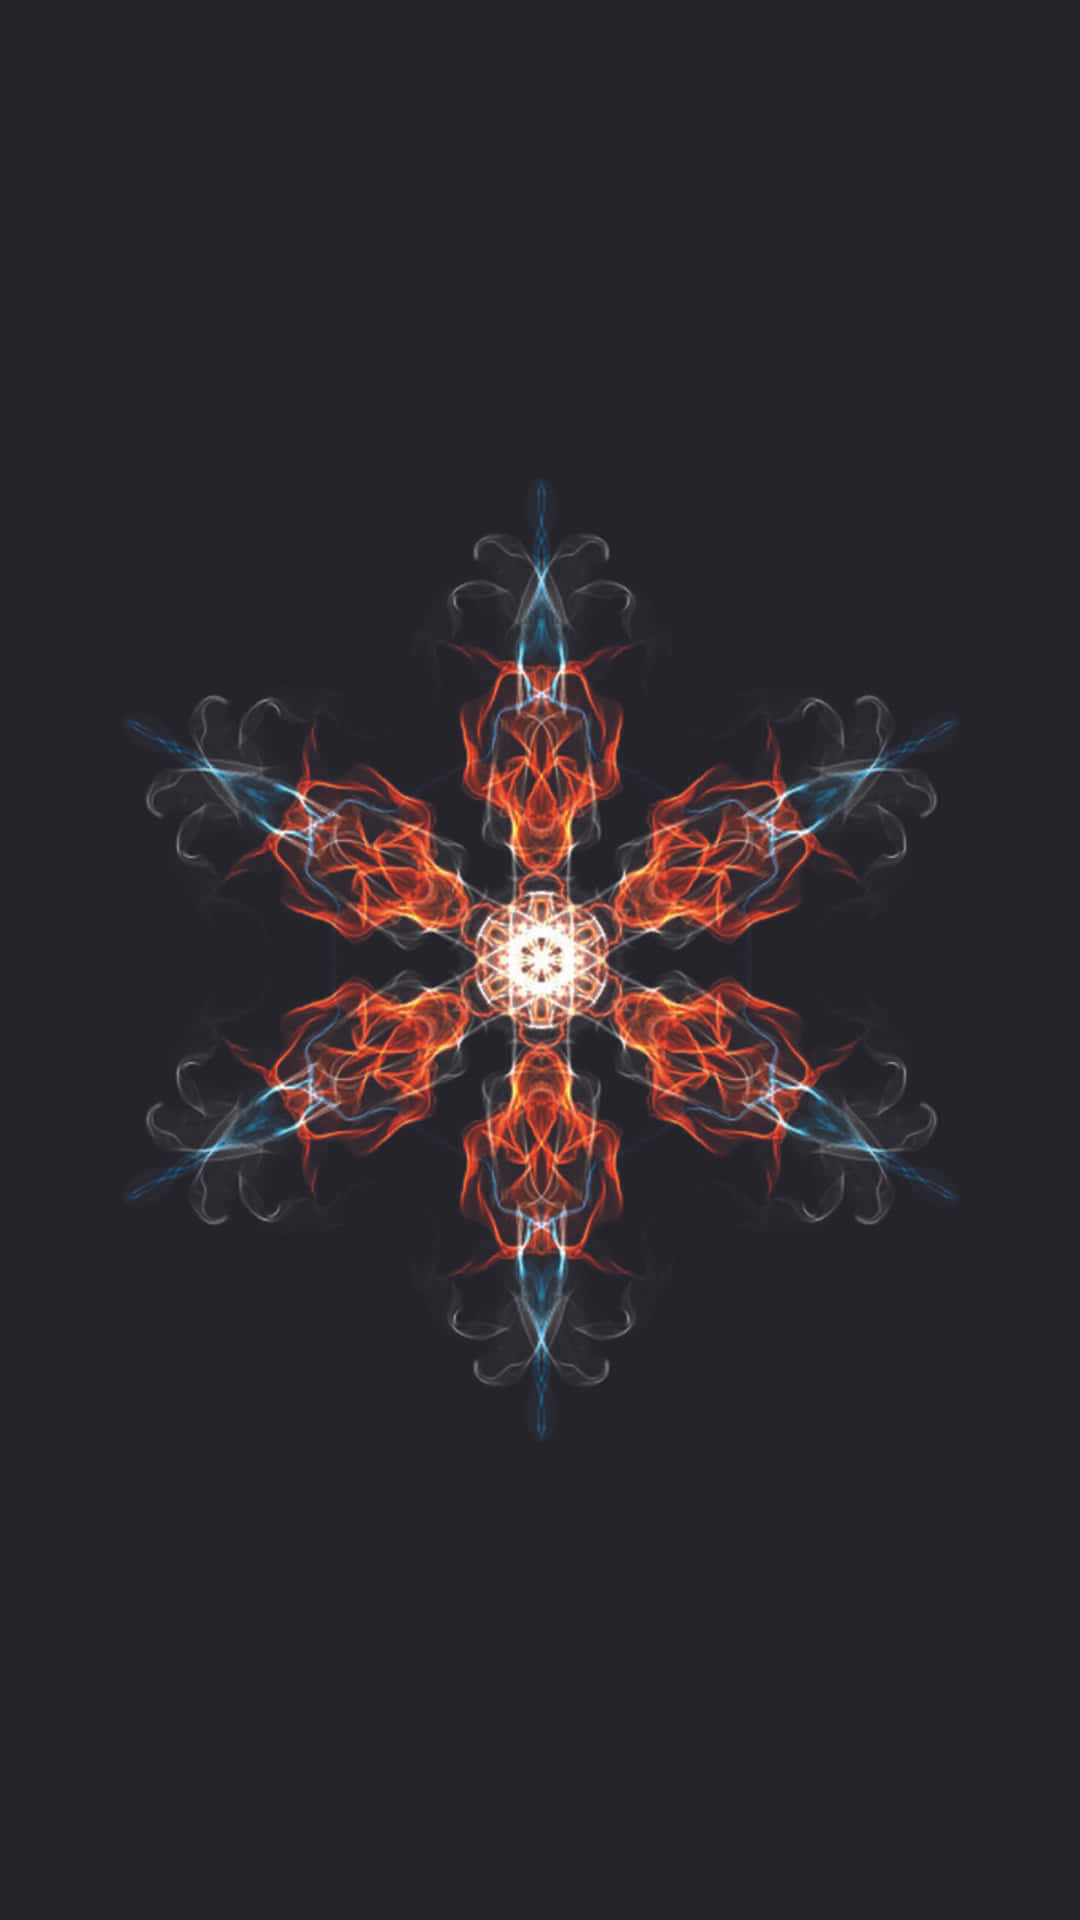 Kaleidoscope Pixel 3XL Amoled Background